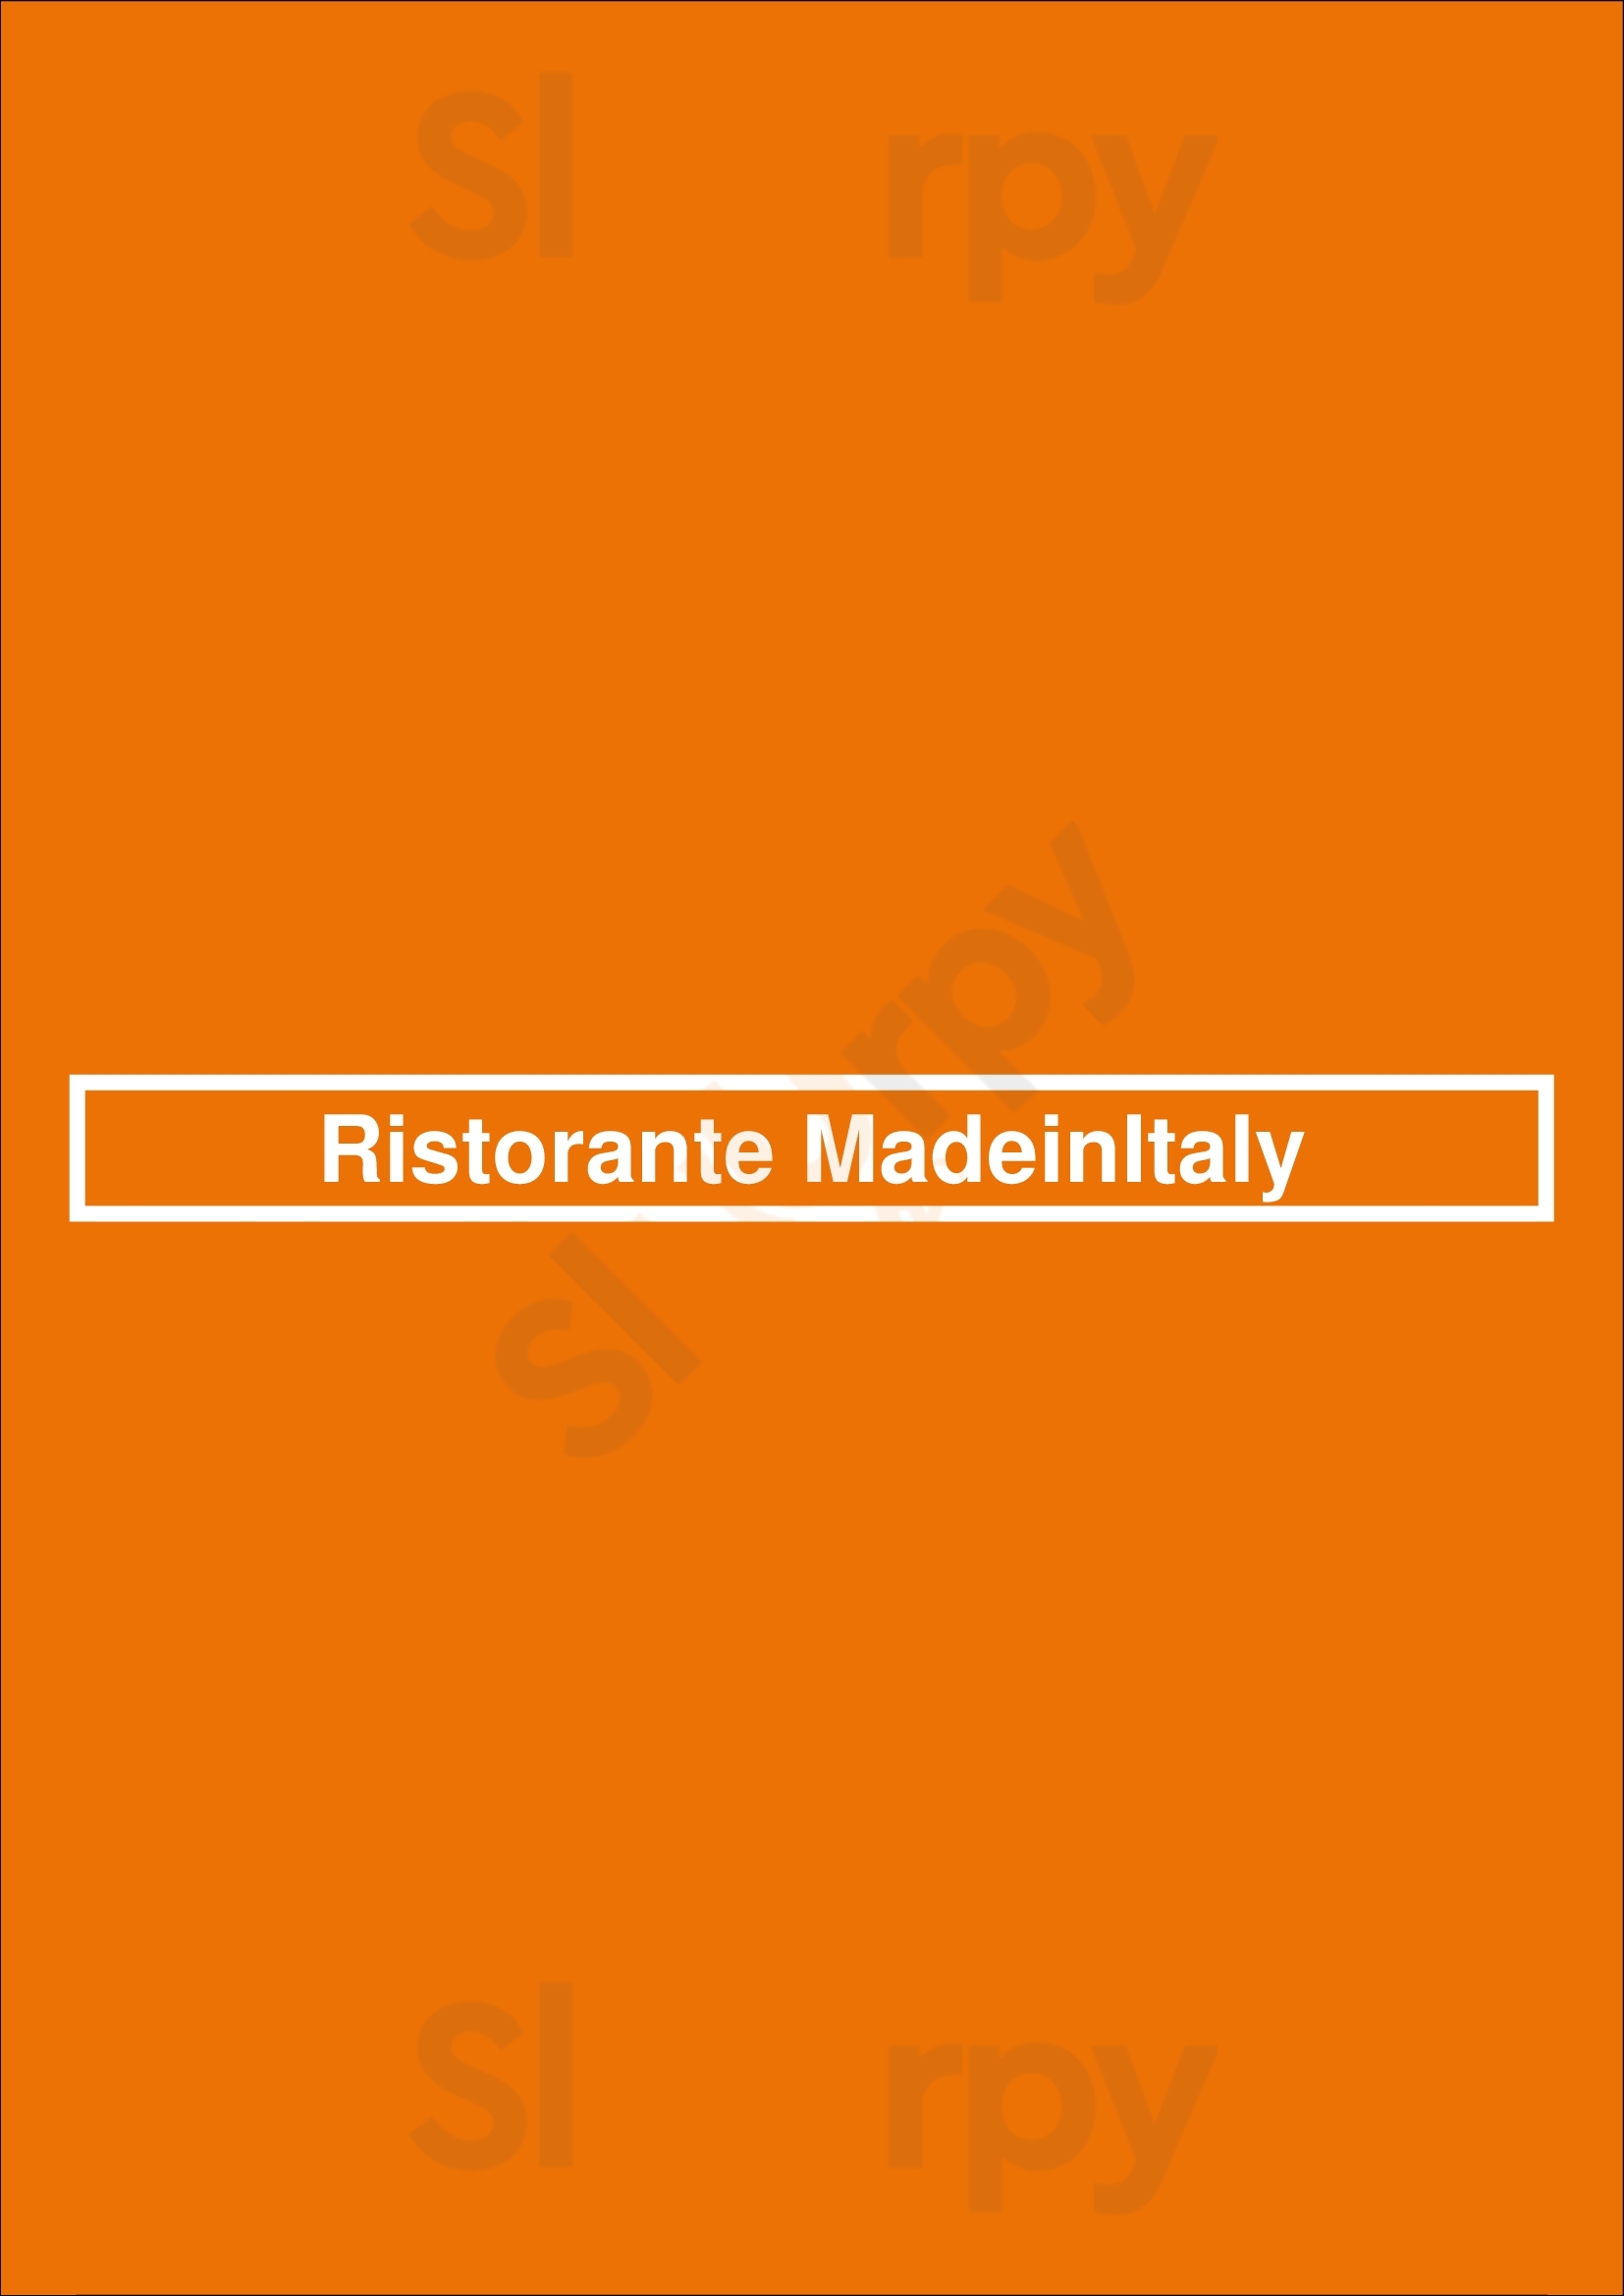 Ristorante Madeinitaly Asse Menu - 1